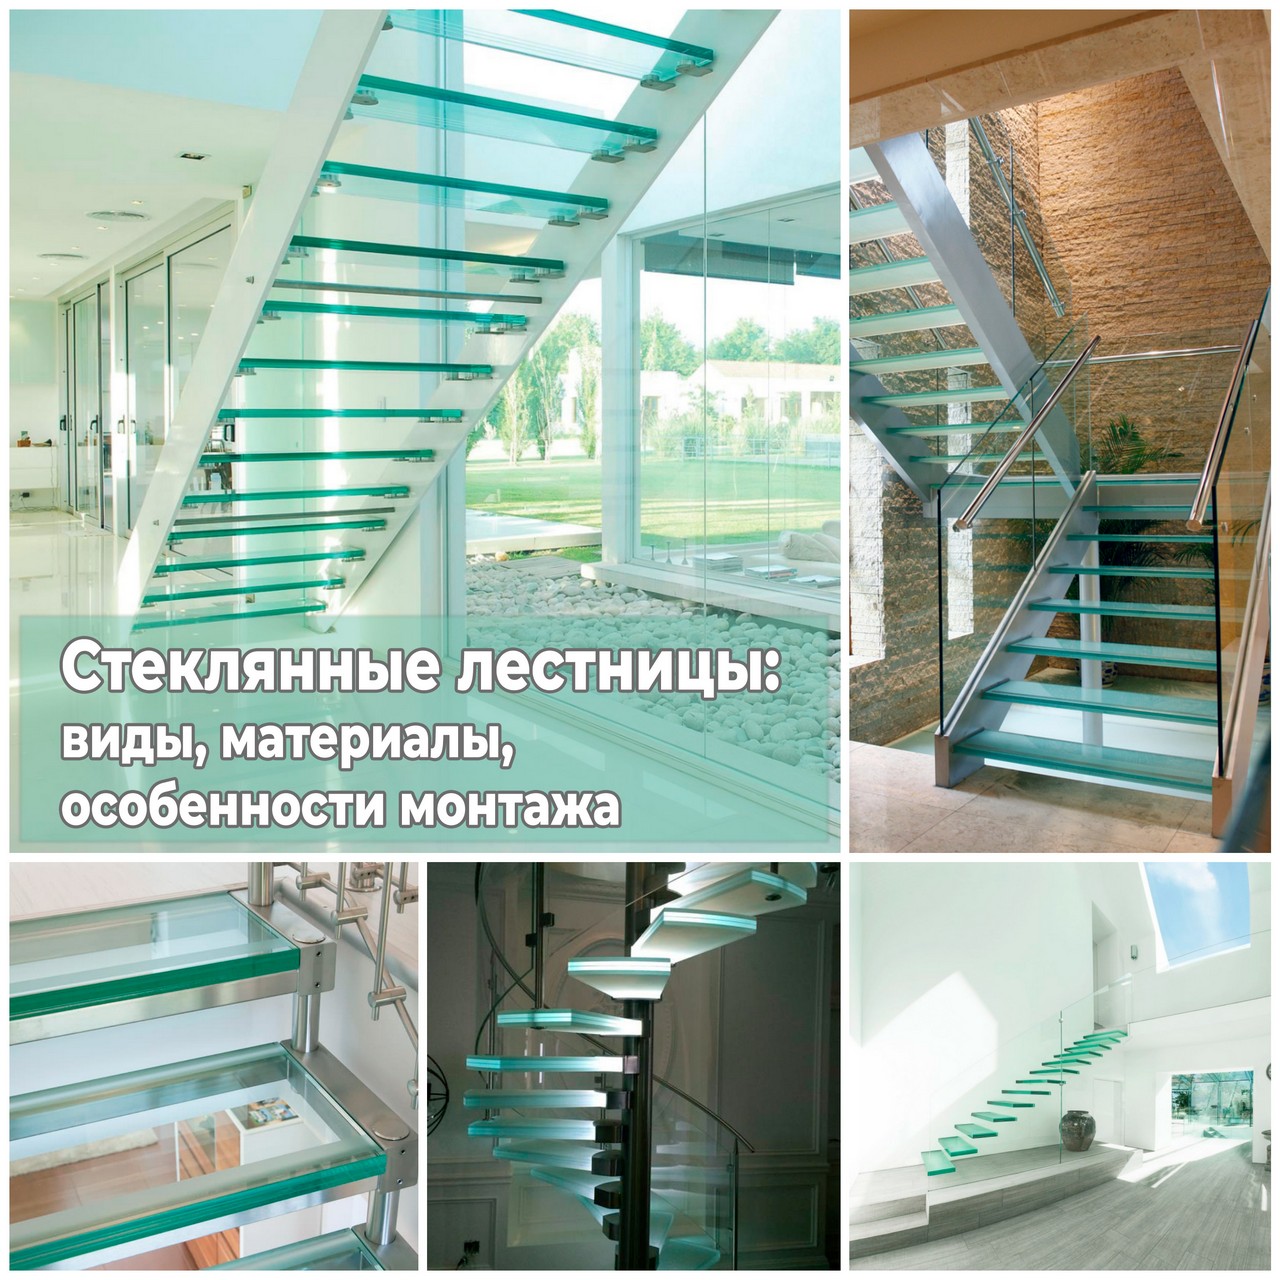 Стеклянные лестницы виды, материалы, особенности монтажа